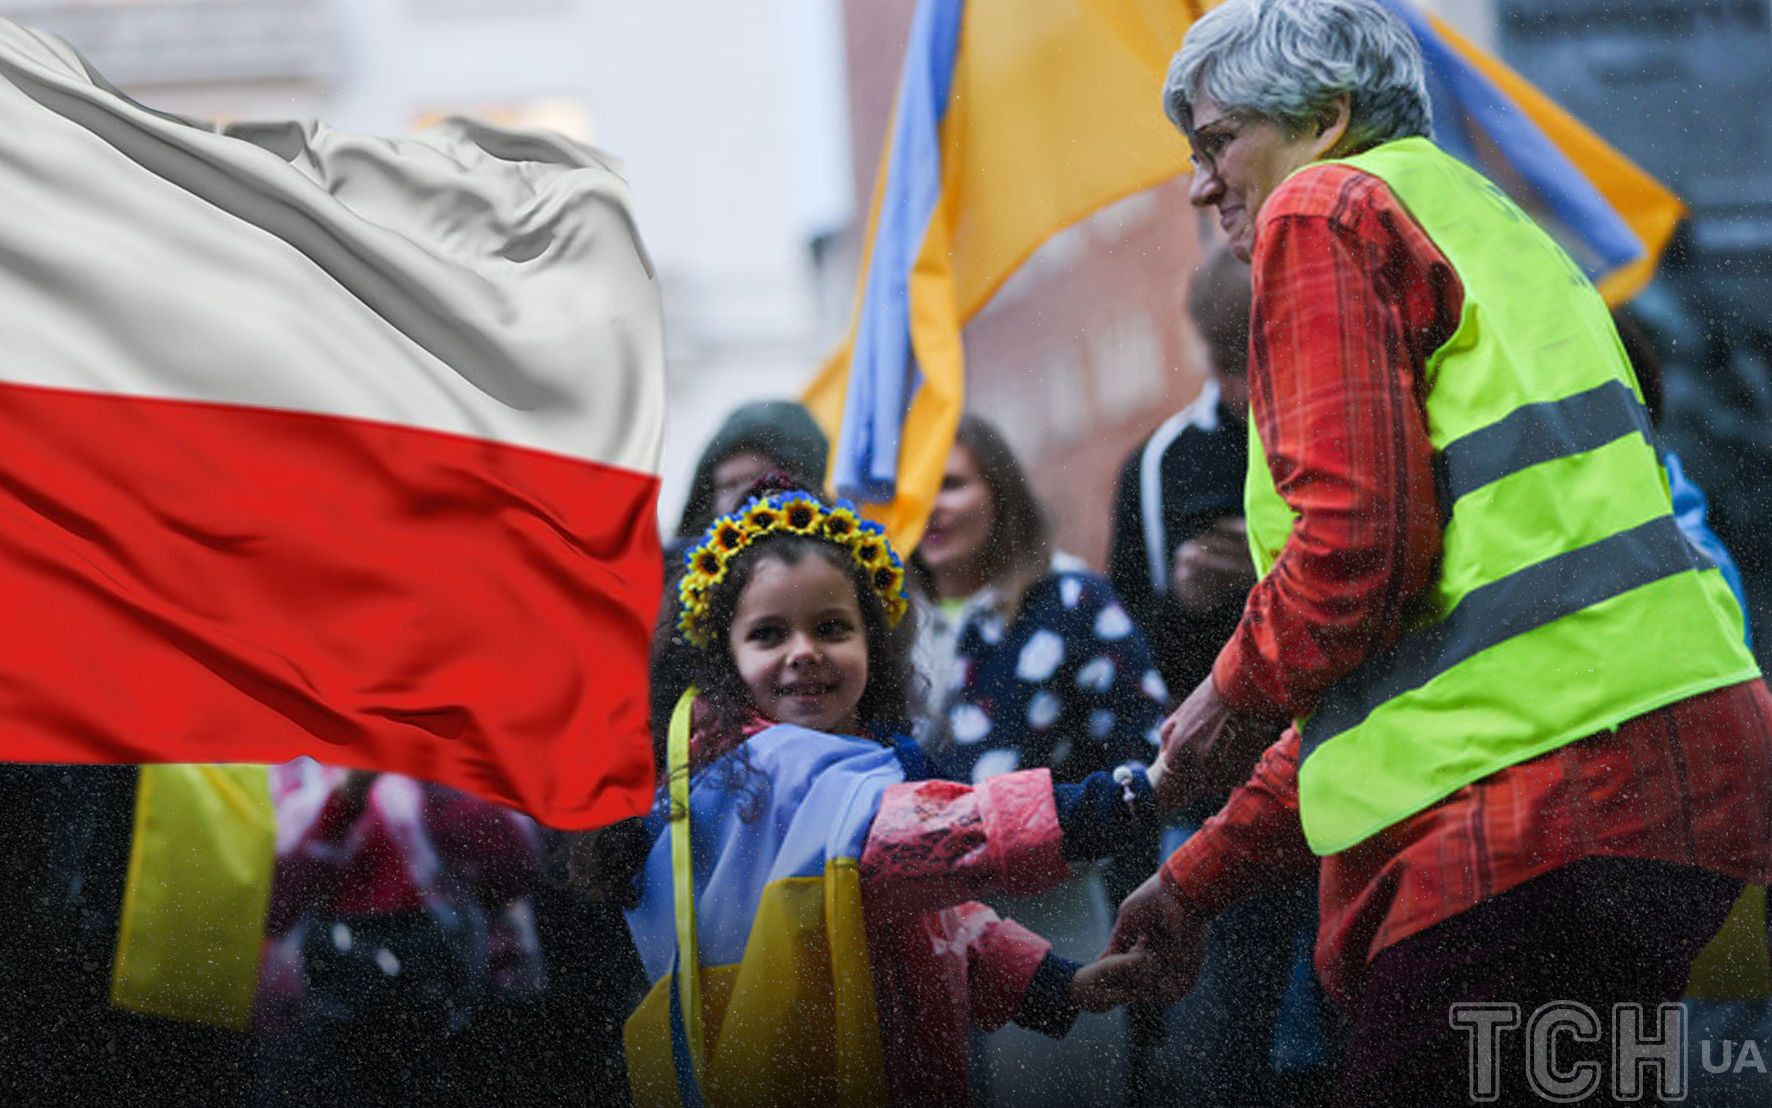 Допомога українським біженцям у Польщі / © ТСН.ua